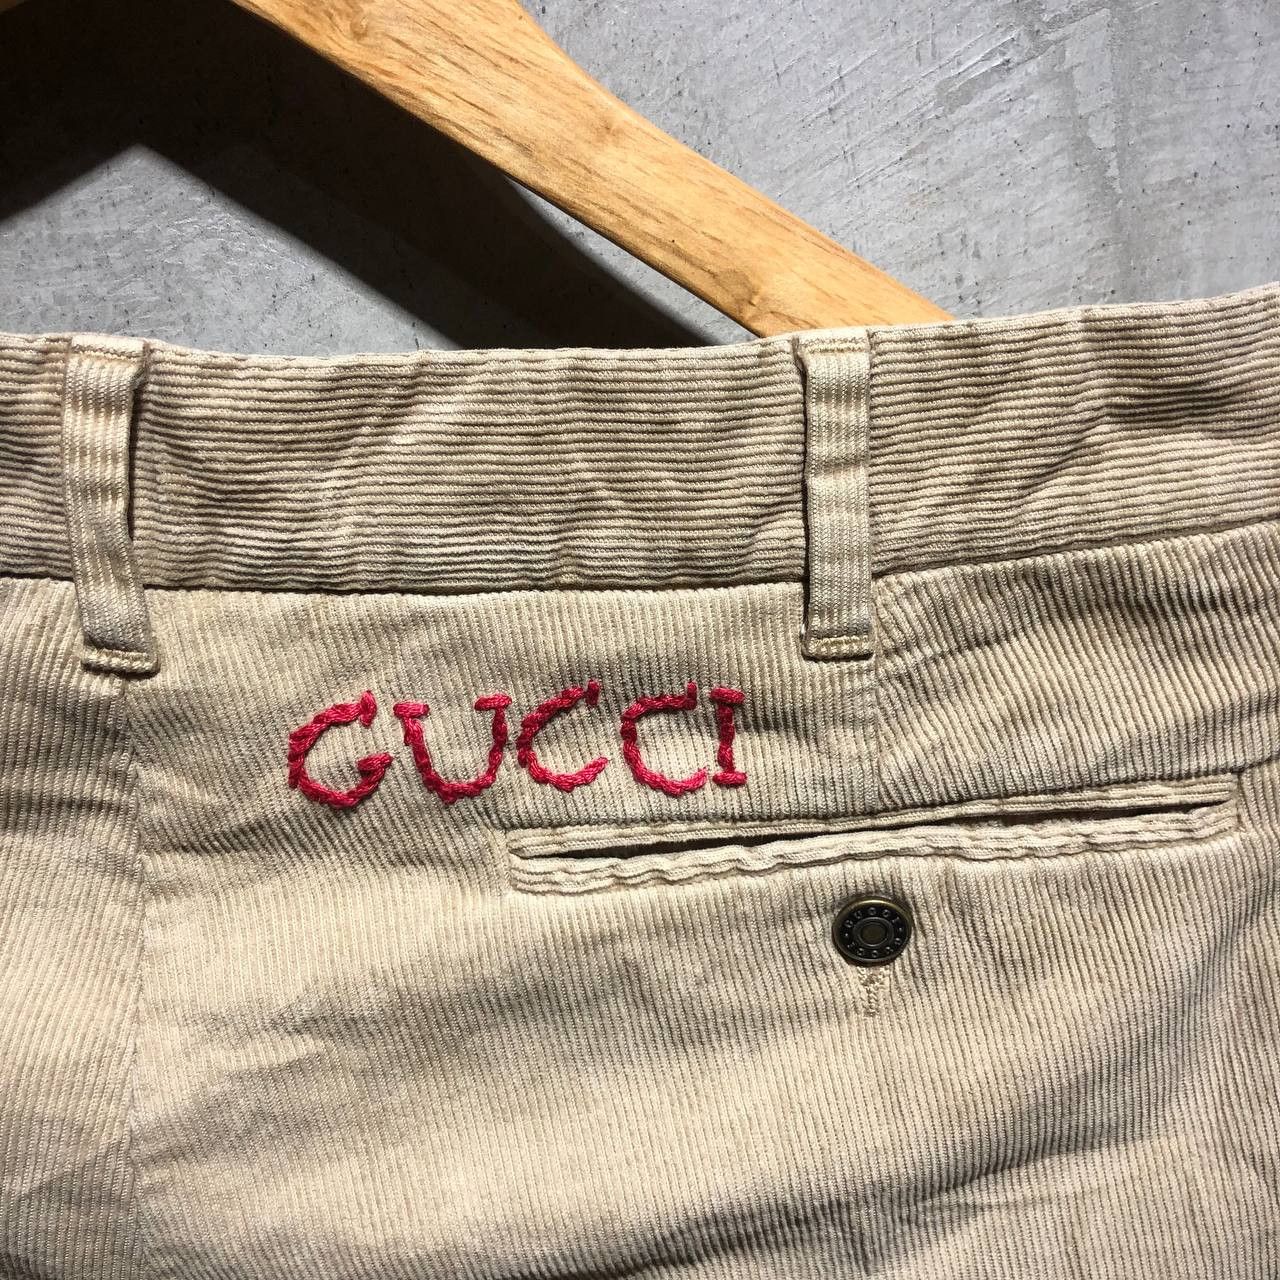 Gucci Gucci Corduroy pants Size US 30 / EU 46 - 3 Thumbnail